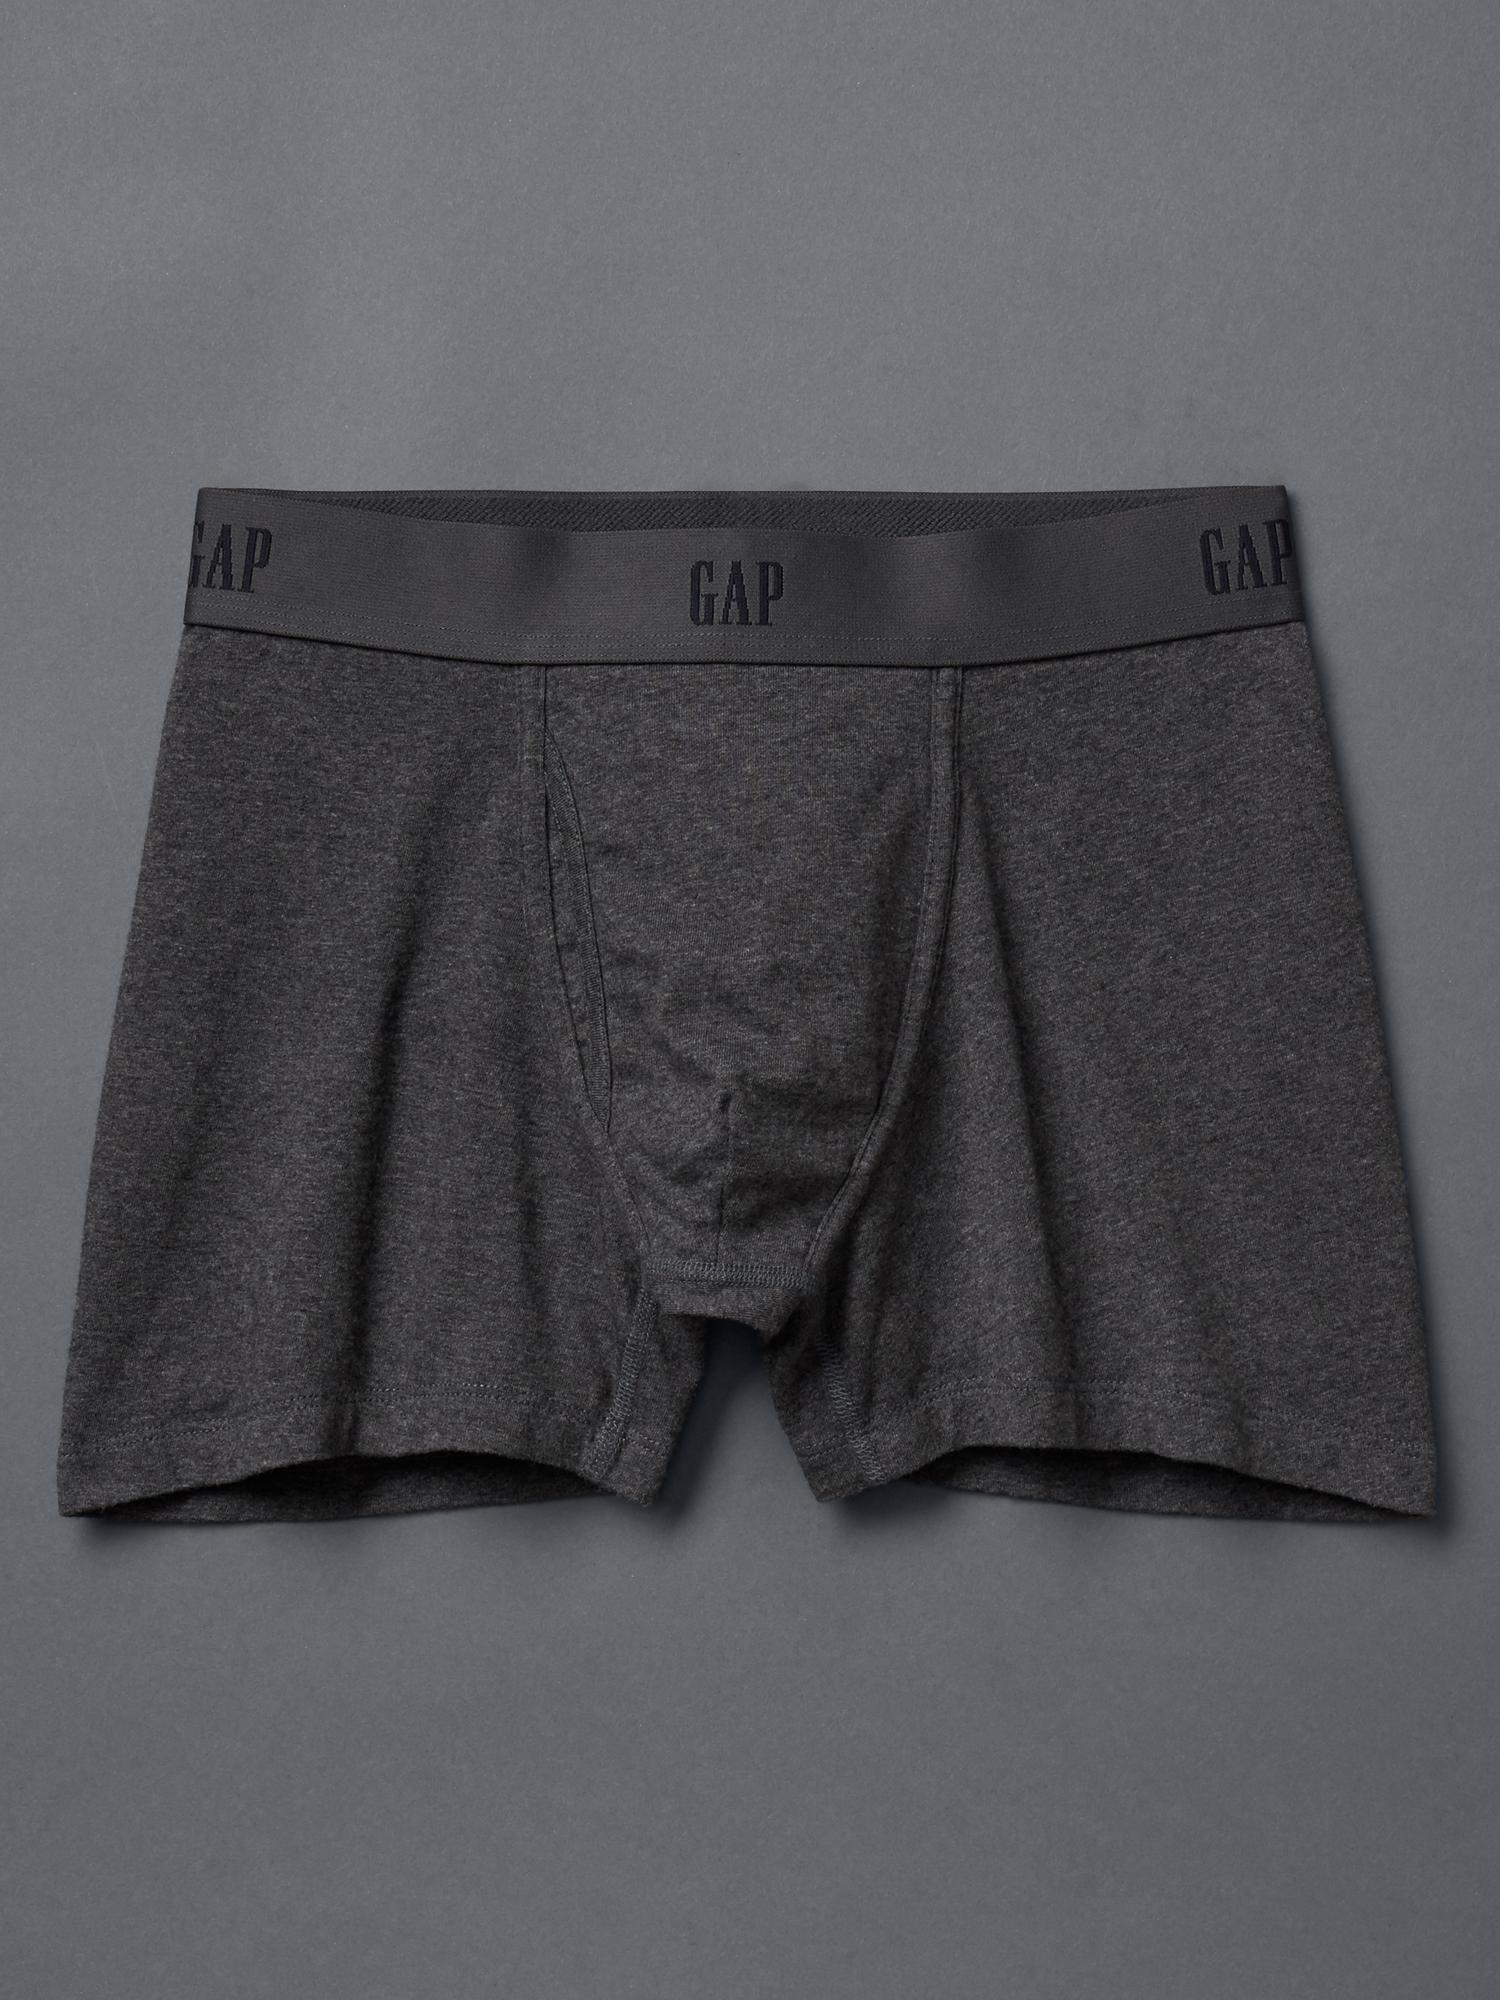 GAP Mens 3-Pack Boxer Brief Underpants Underwear